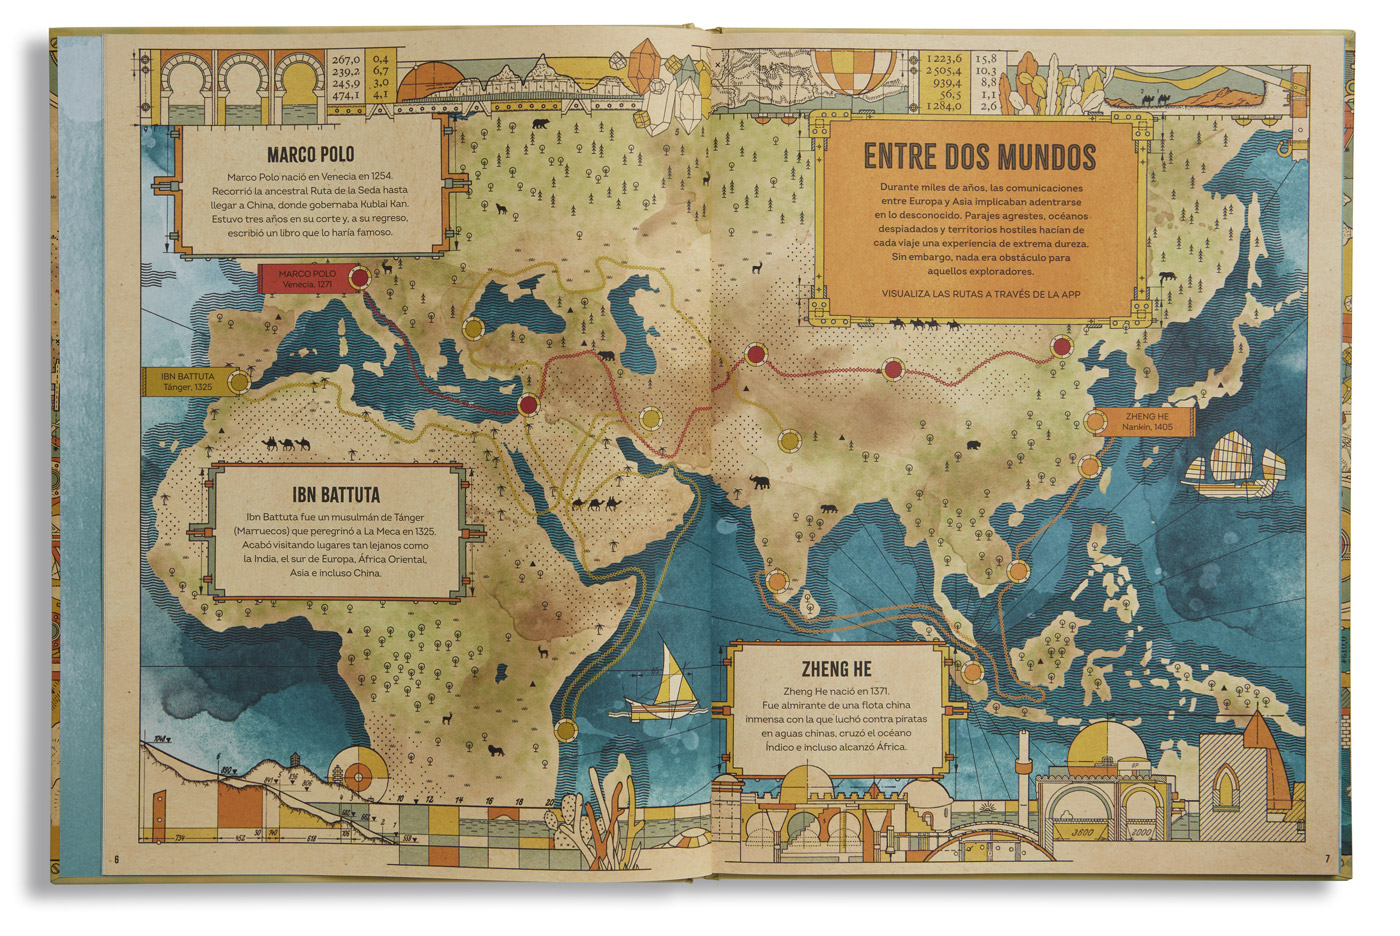 Atlas de las grandes expediciones